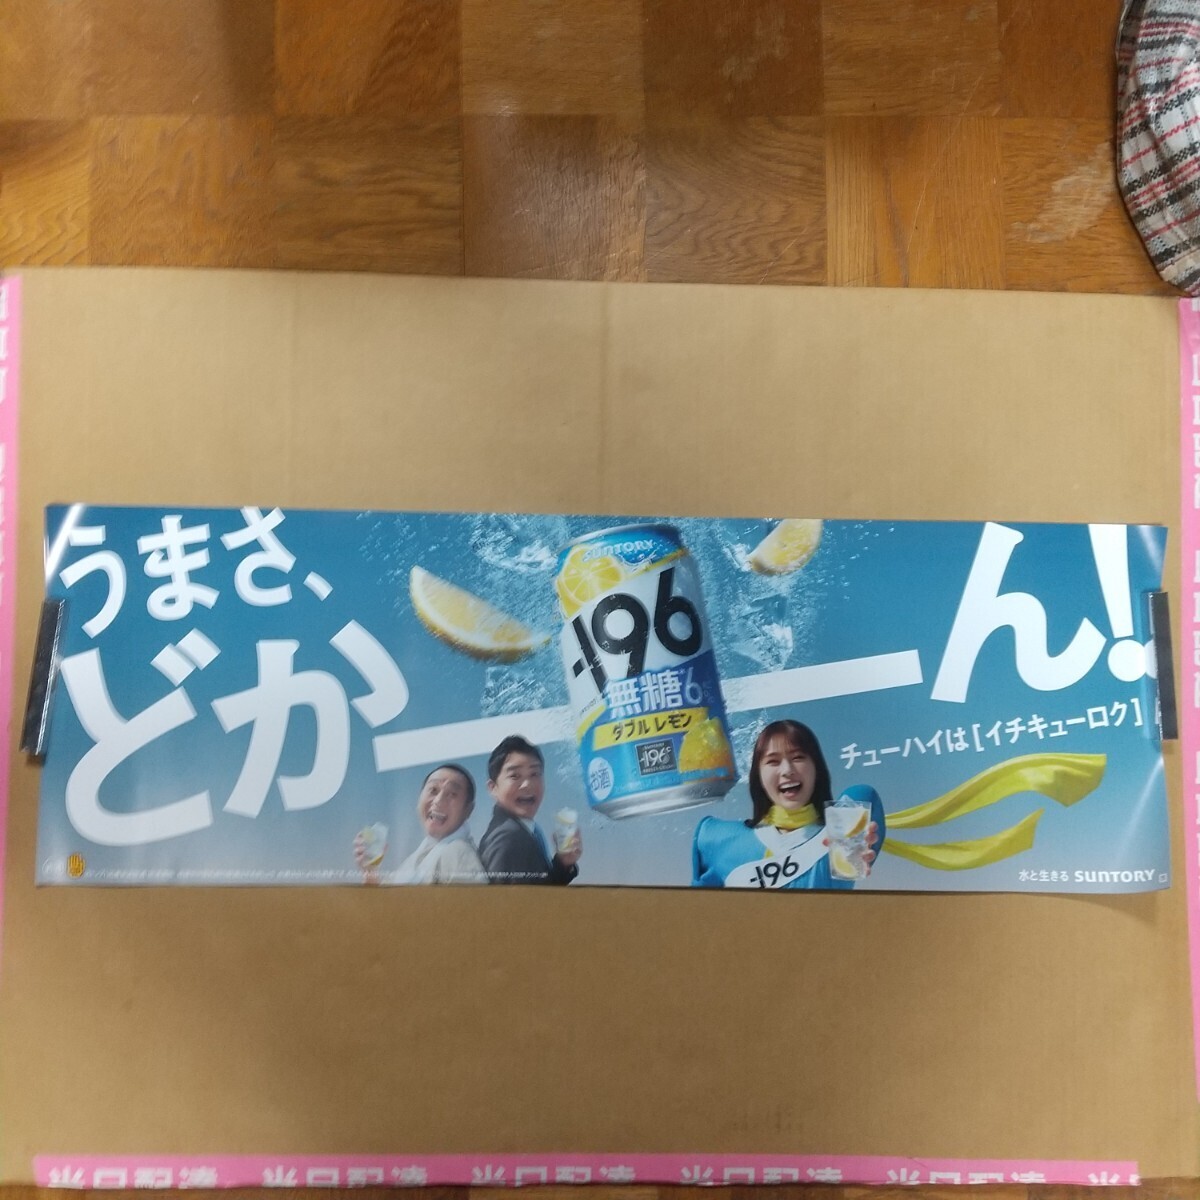 [ не продается ] первый появление Shibuya .. ручка большой . для бизнеса постер -196 нет сахар 6% двойной лимон SUNTORY не использовался 